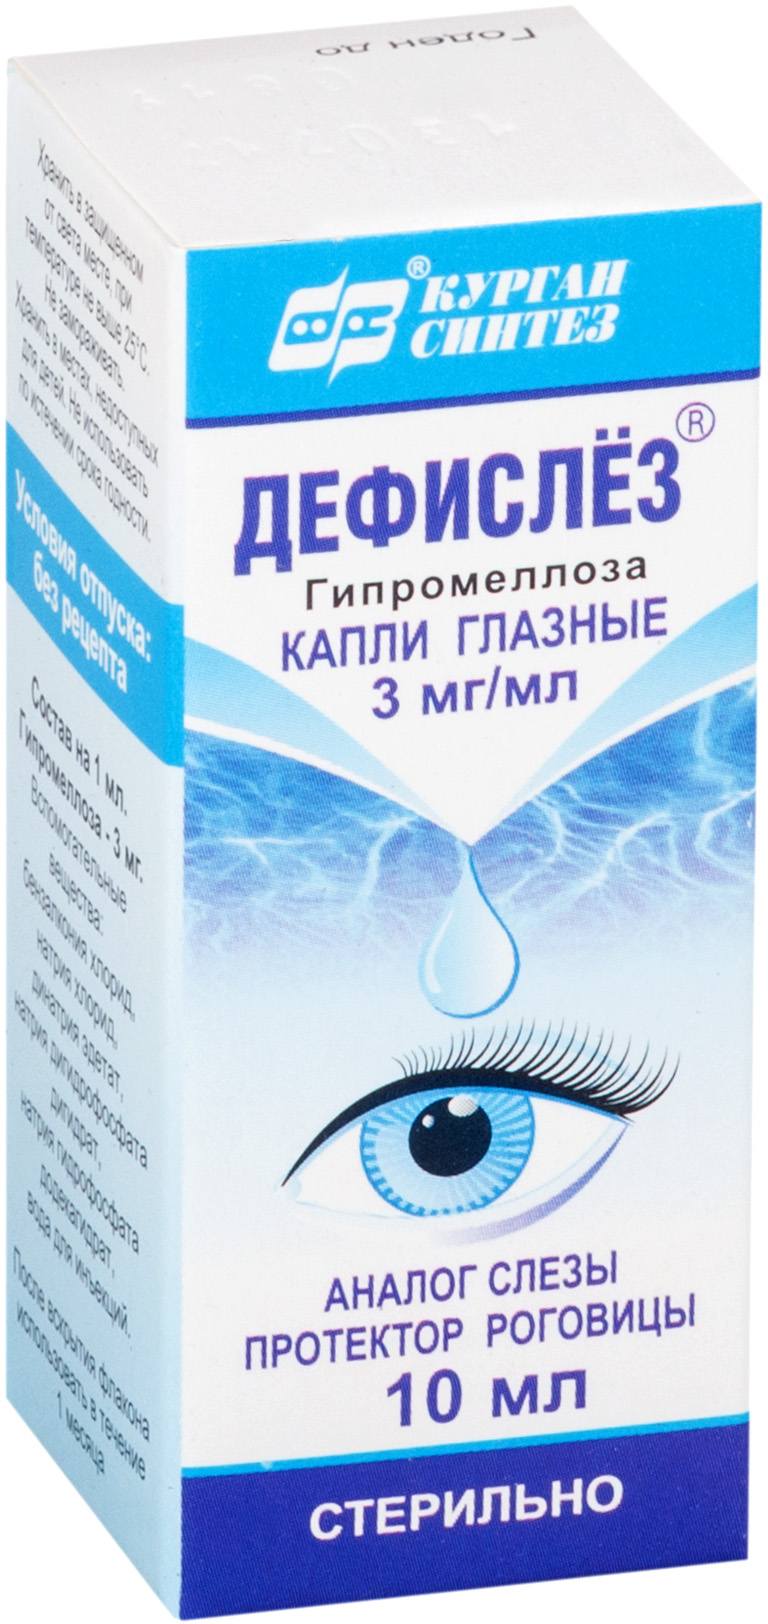 Дефислез, капли глазные 3 мг/мл, 10 мл систейн ультра капли глазные 3 мл